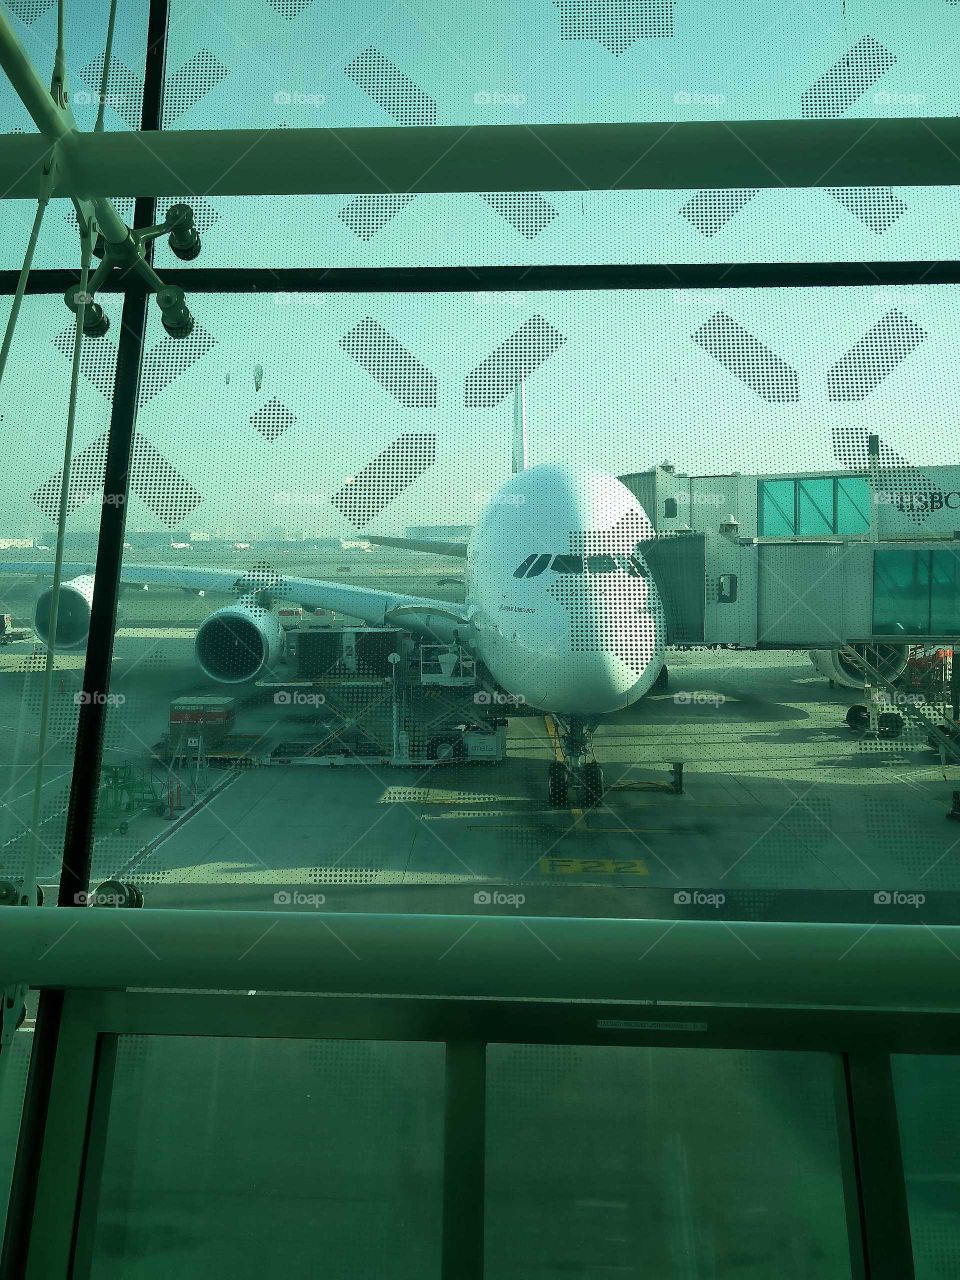 airbus A380 Dubai airport